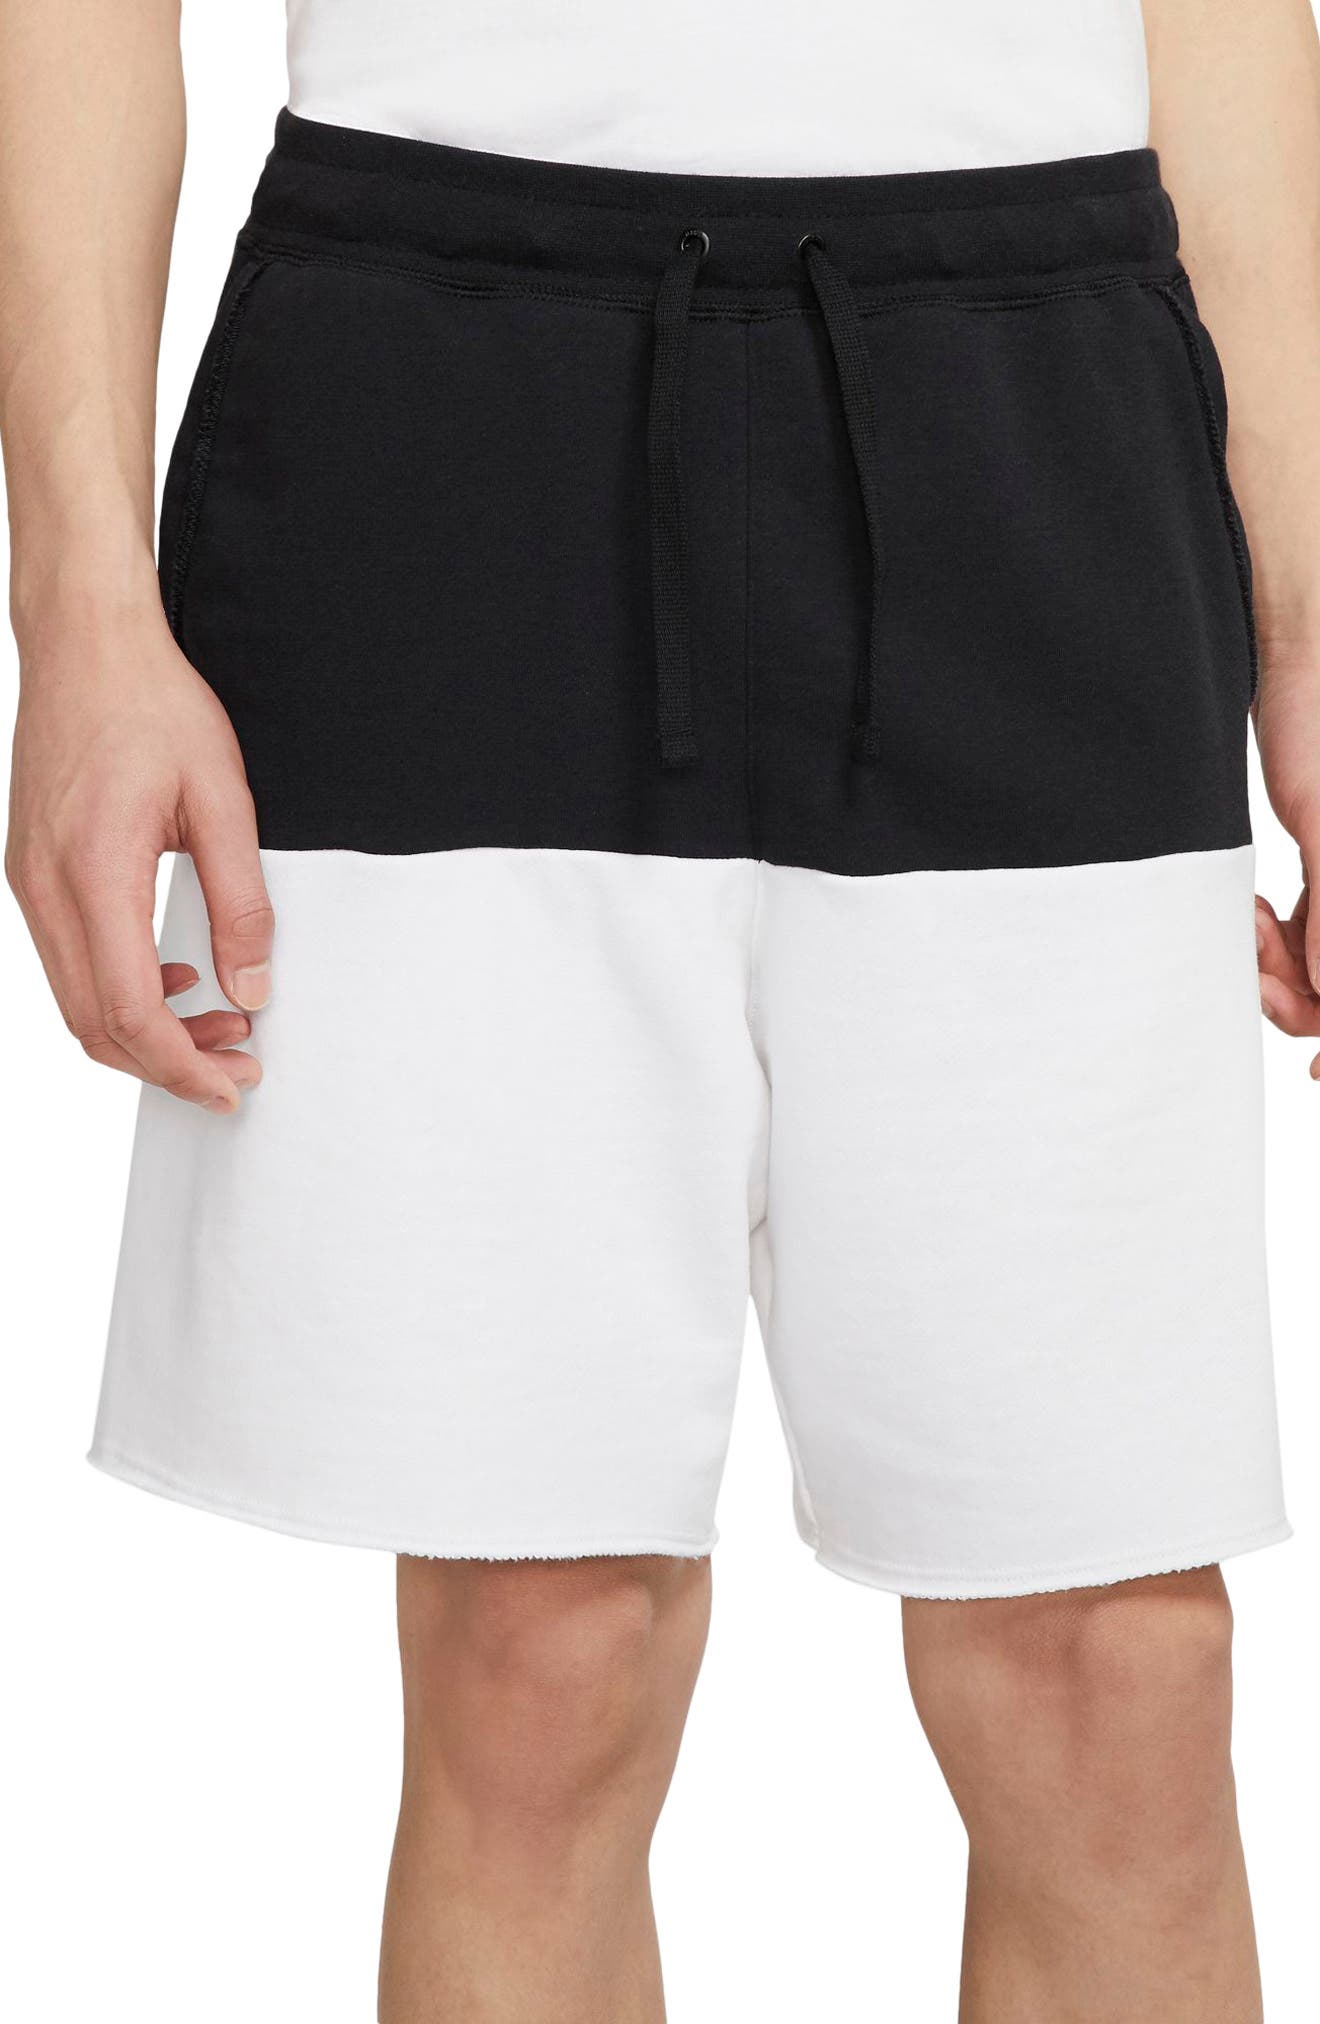 nike grey sweatpant shorts